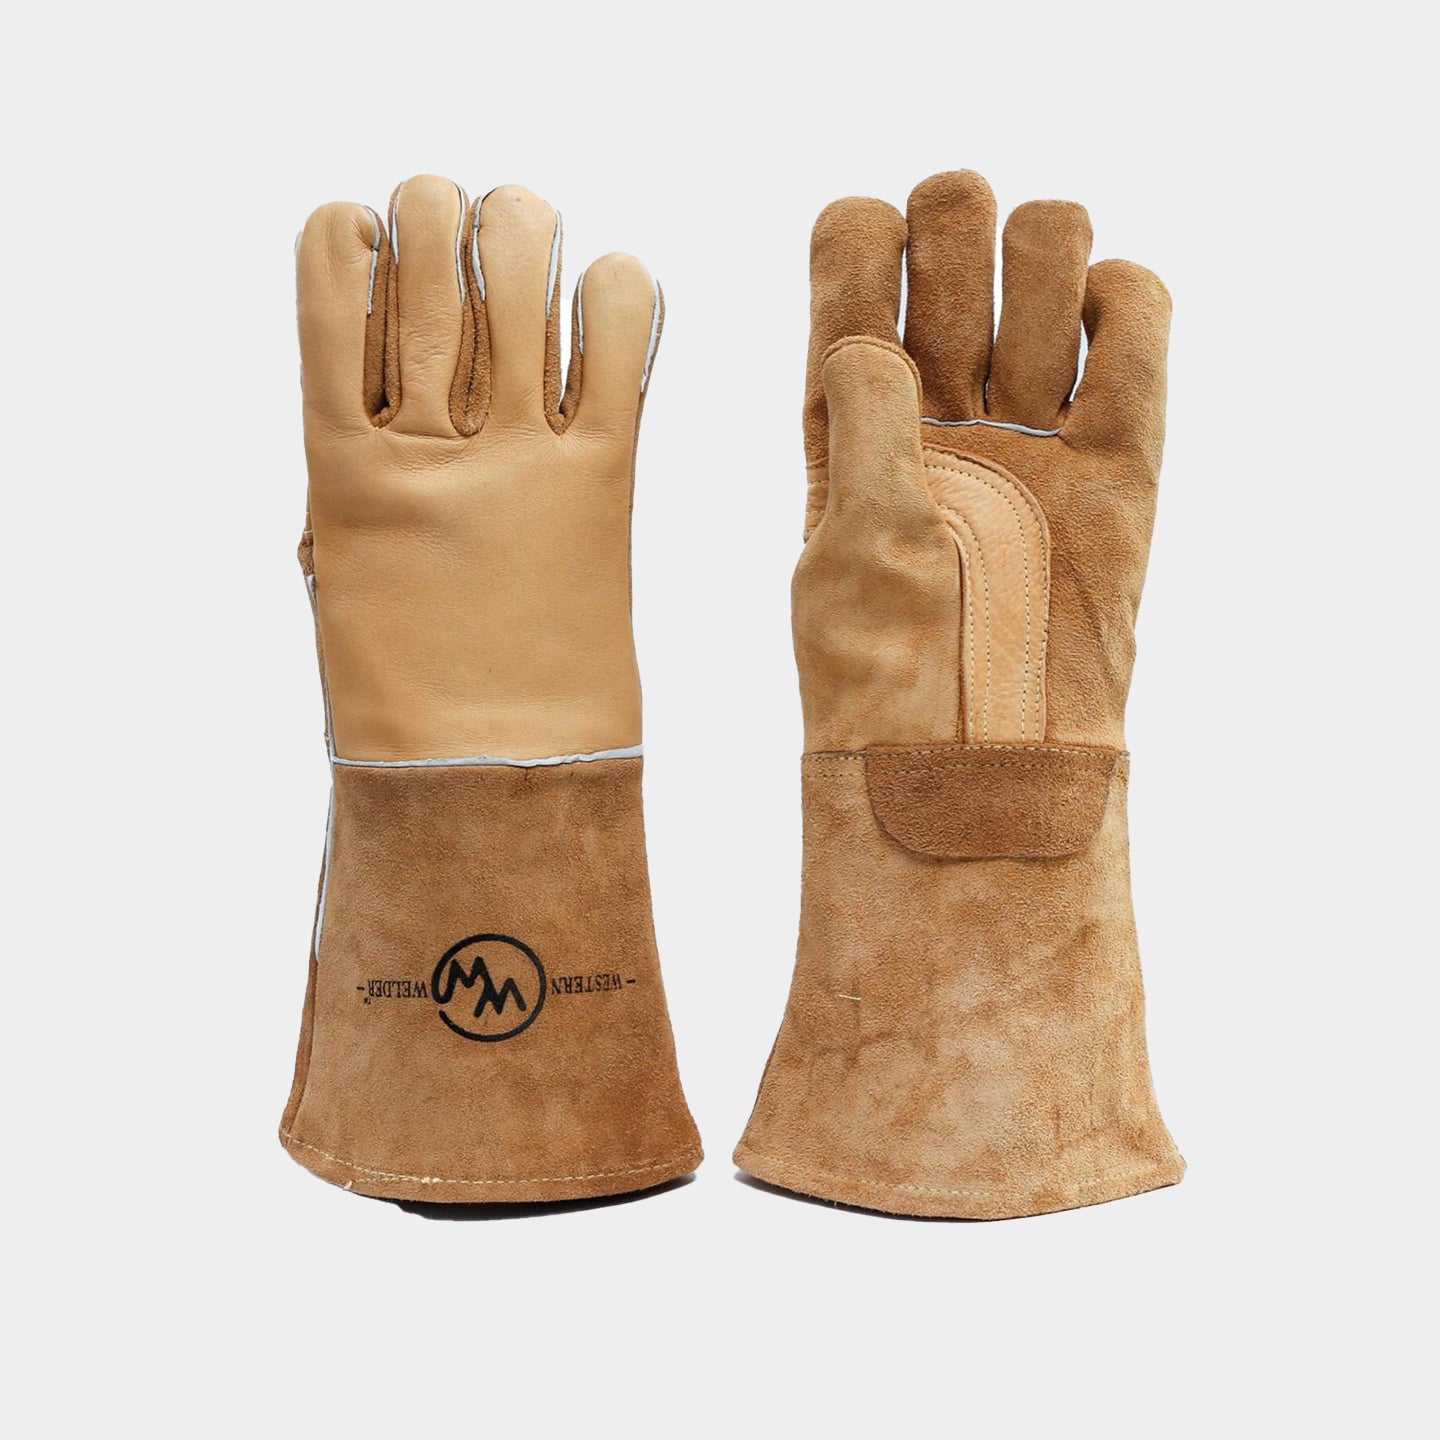 Image of Kevlar® Stitched Stick Welding Gloves